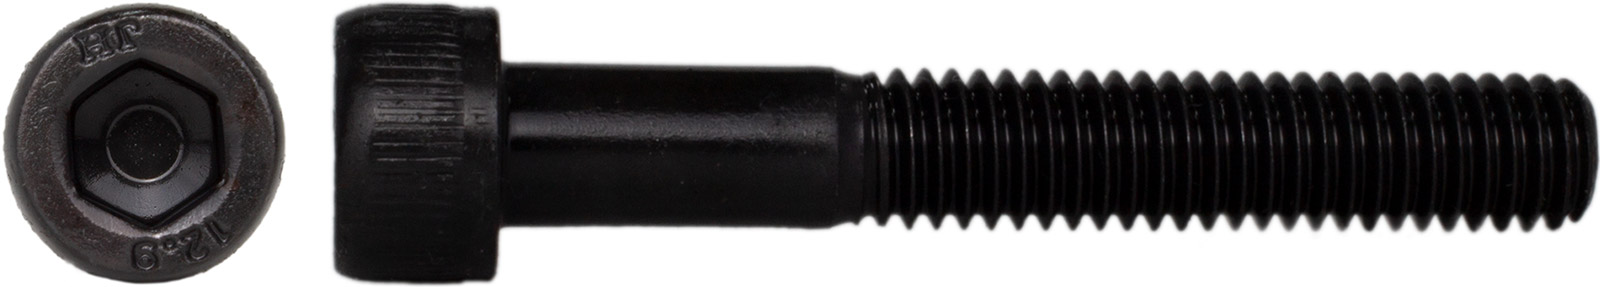 Zylinderschrauben Feingewinde schwarz 12.9 M6-M20 Blank Innensechskant Schraube 